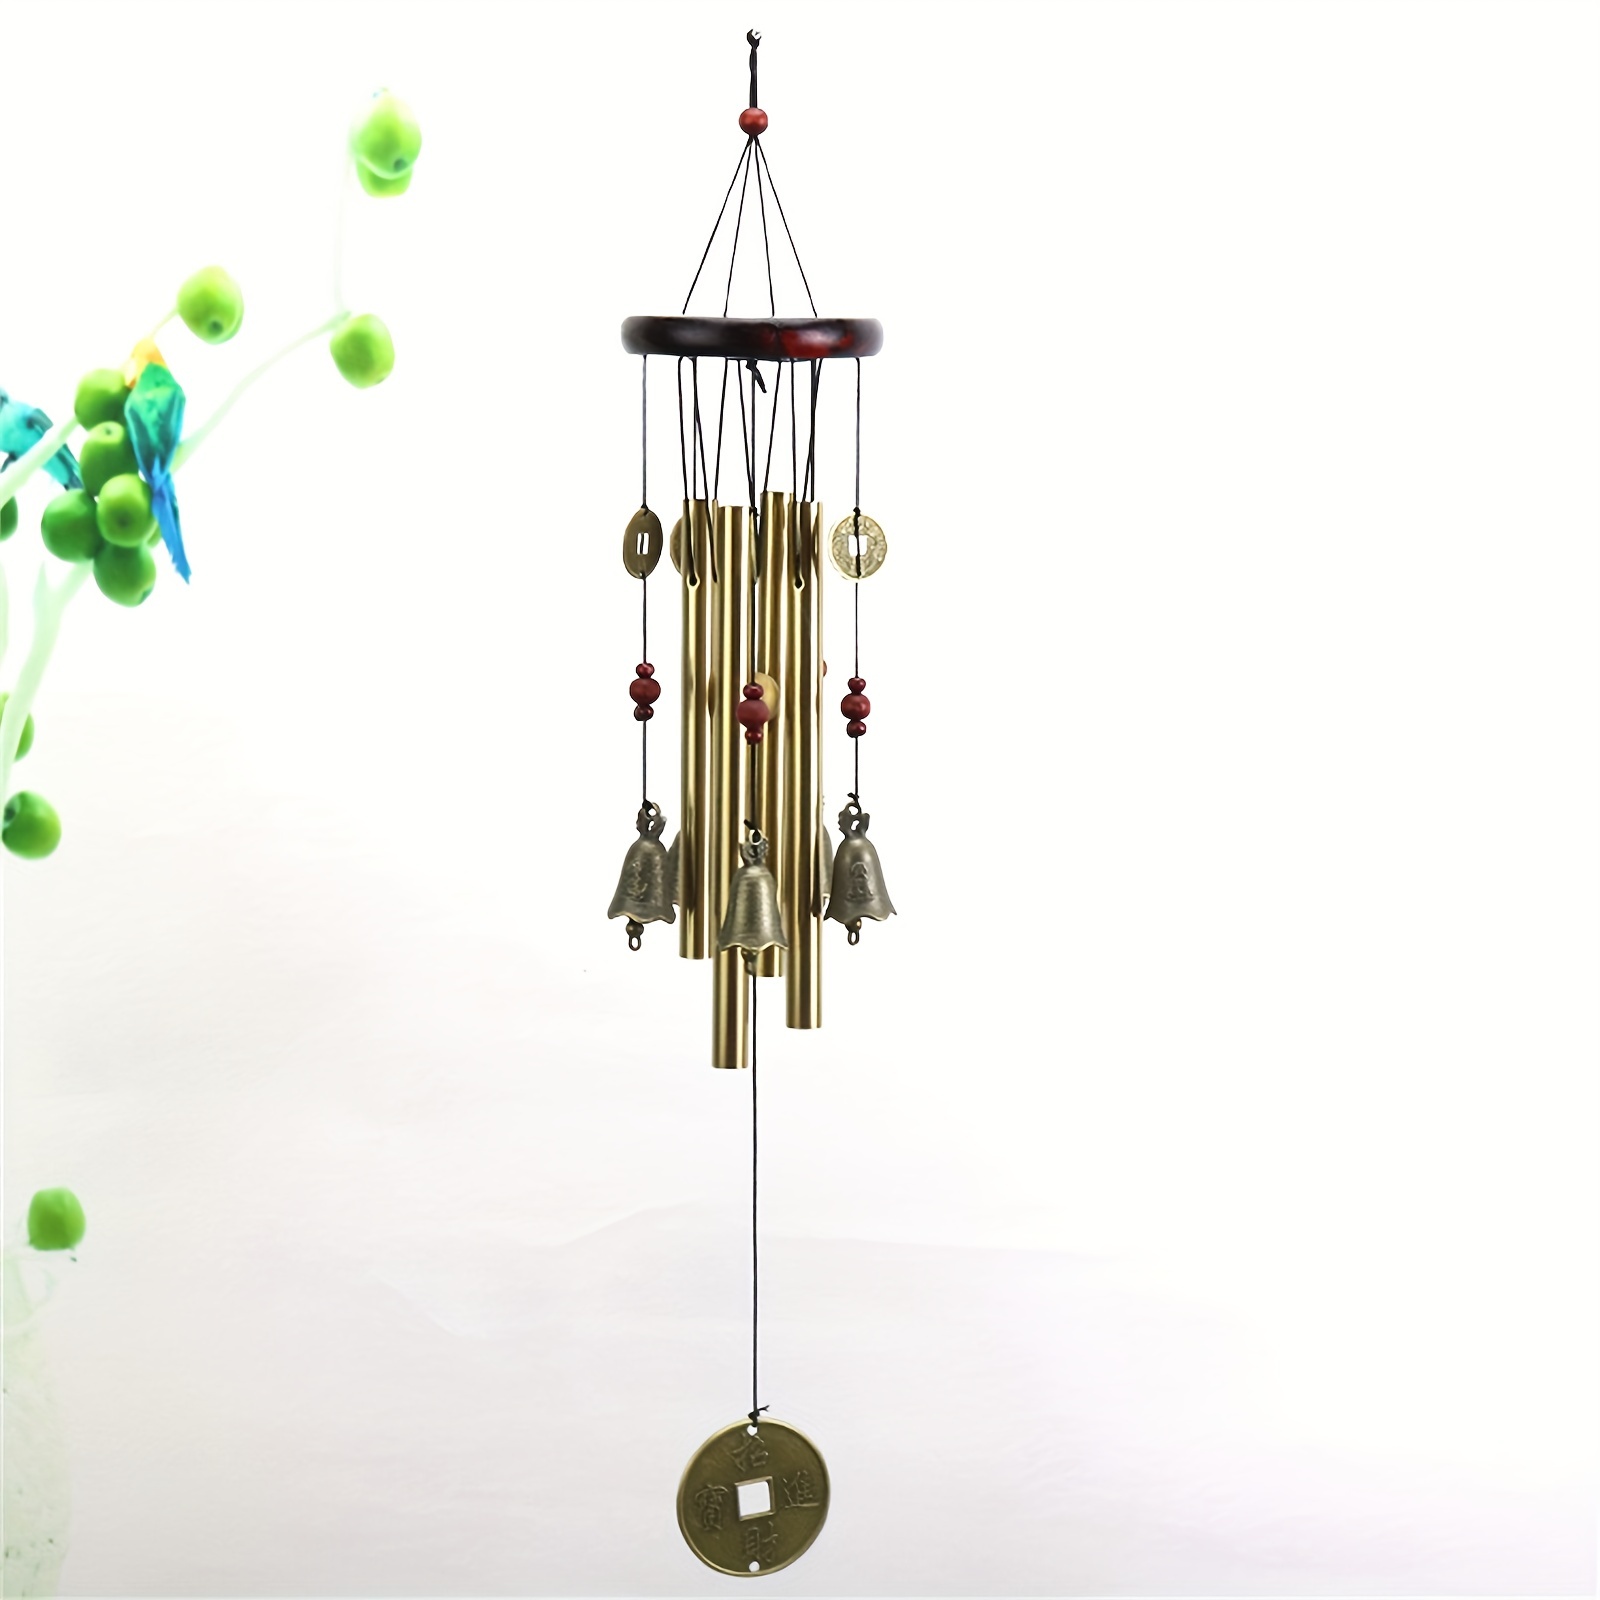 Carillons éoliens, 30 In Outdoor Carillons éoliens avec 18 tubes en métal